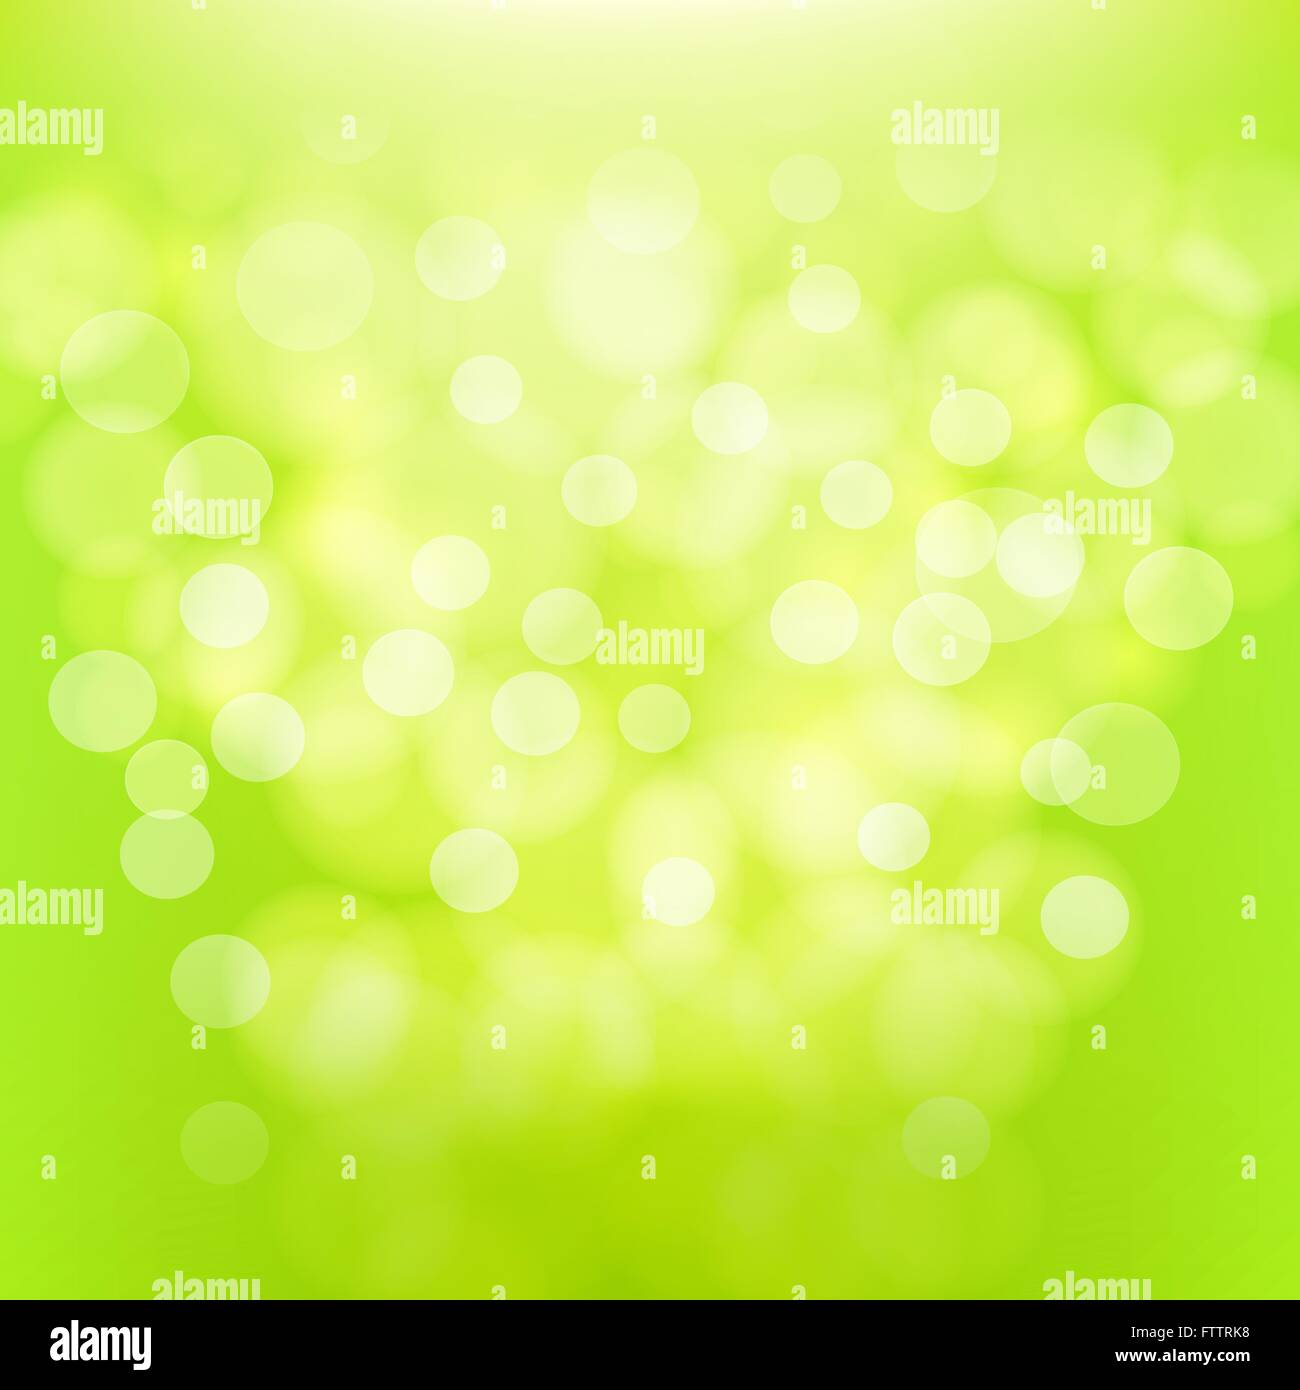 Abstrakt Grün unscharf Hintergrund. Vektor-illustration Stock Vektor